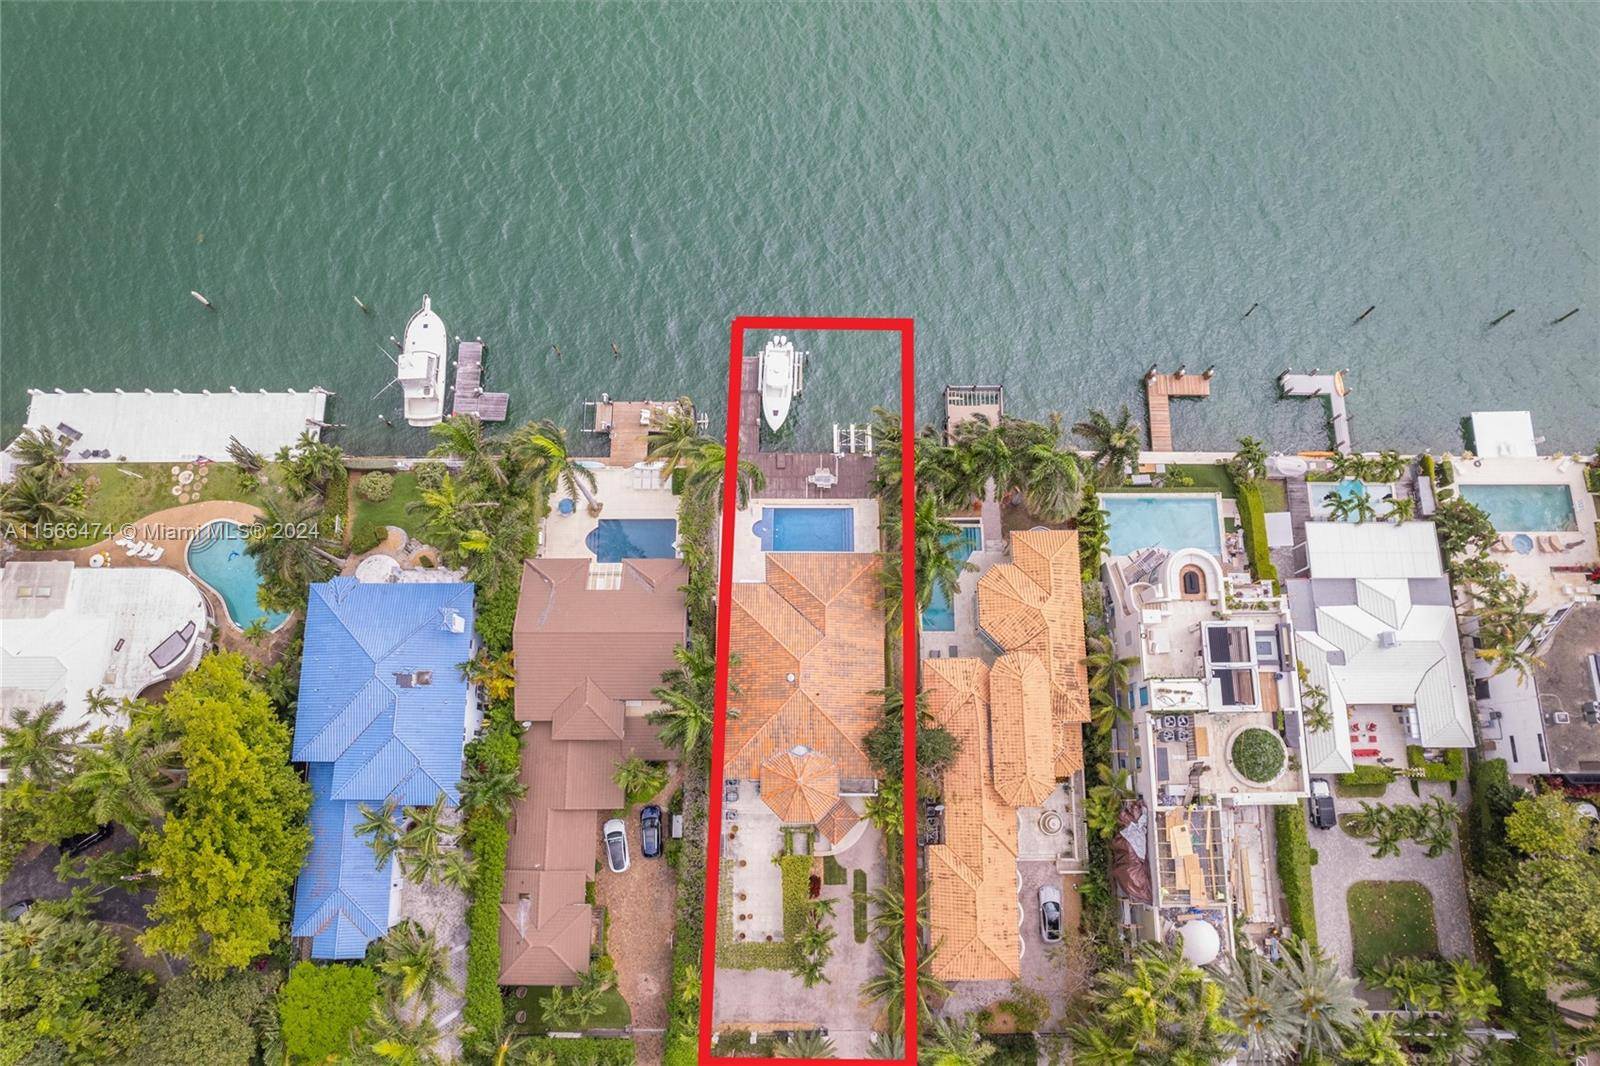 Contemporary villa in Hibiscus Island, Miami Beach.